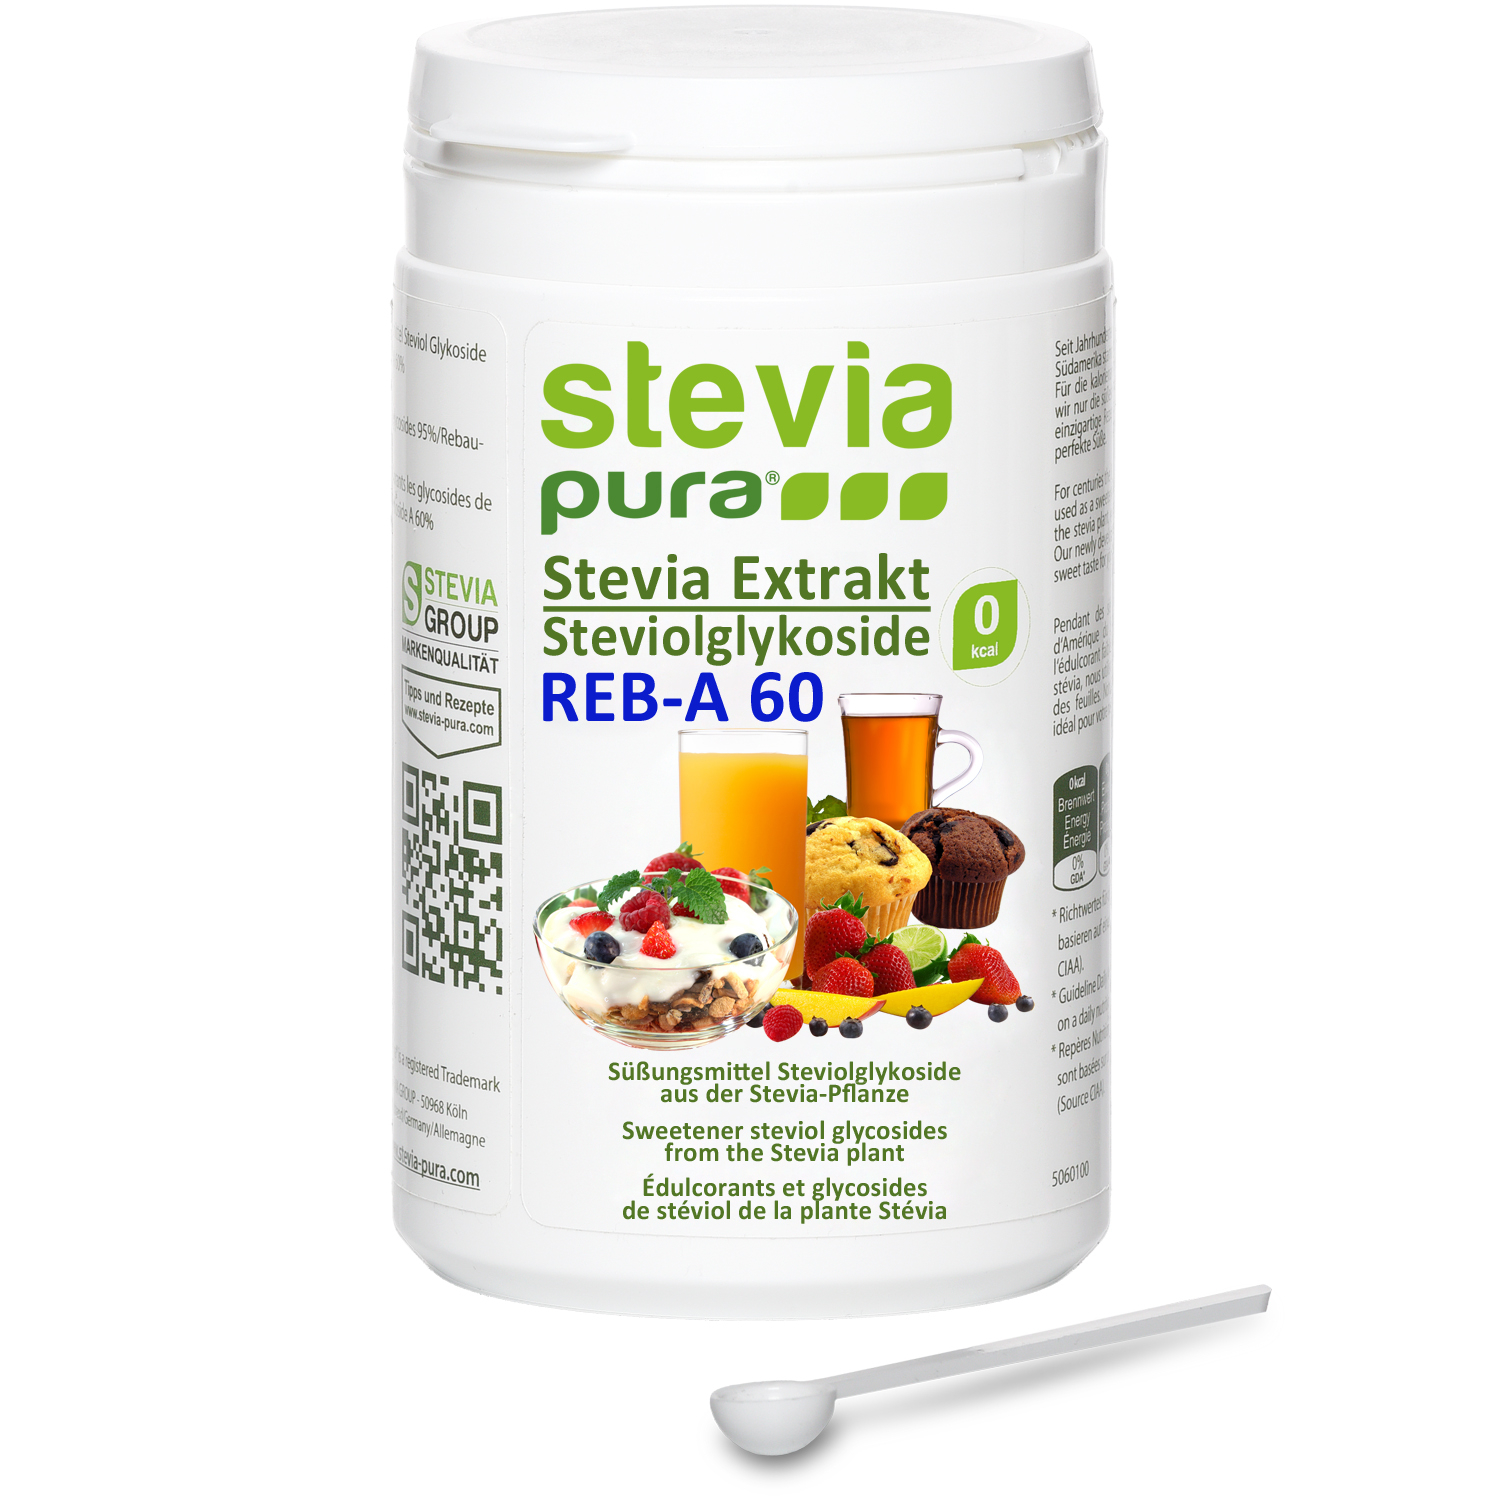 Acquistare l'estratto di Stevia in Polvere senza additivi